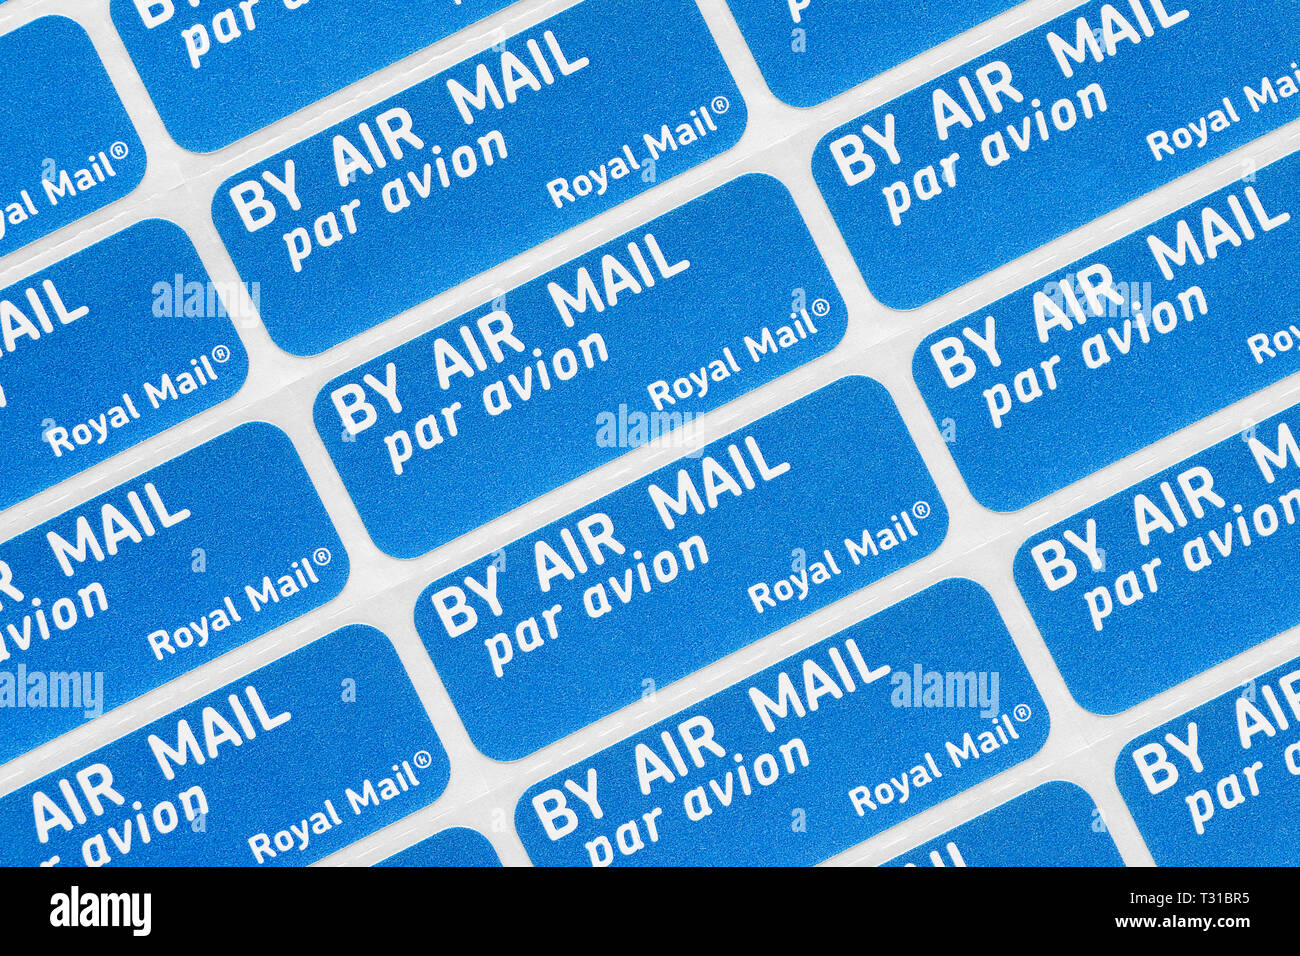 Royal Mail correo aéreo, pegatinas, Reino Unido Foto de stock